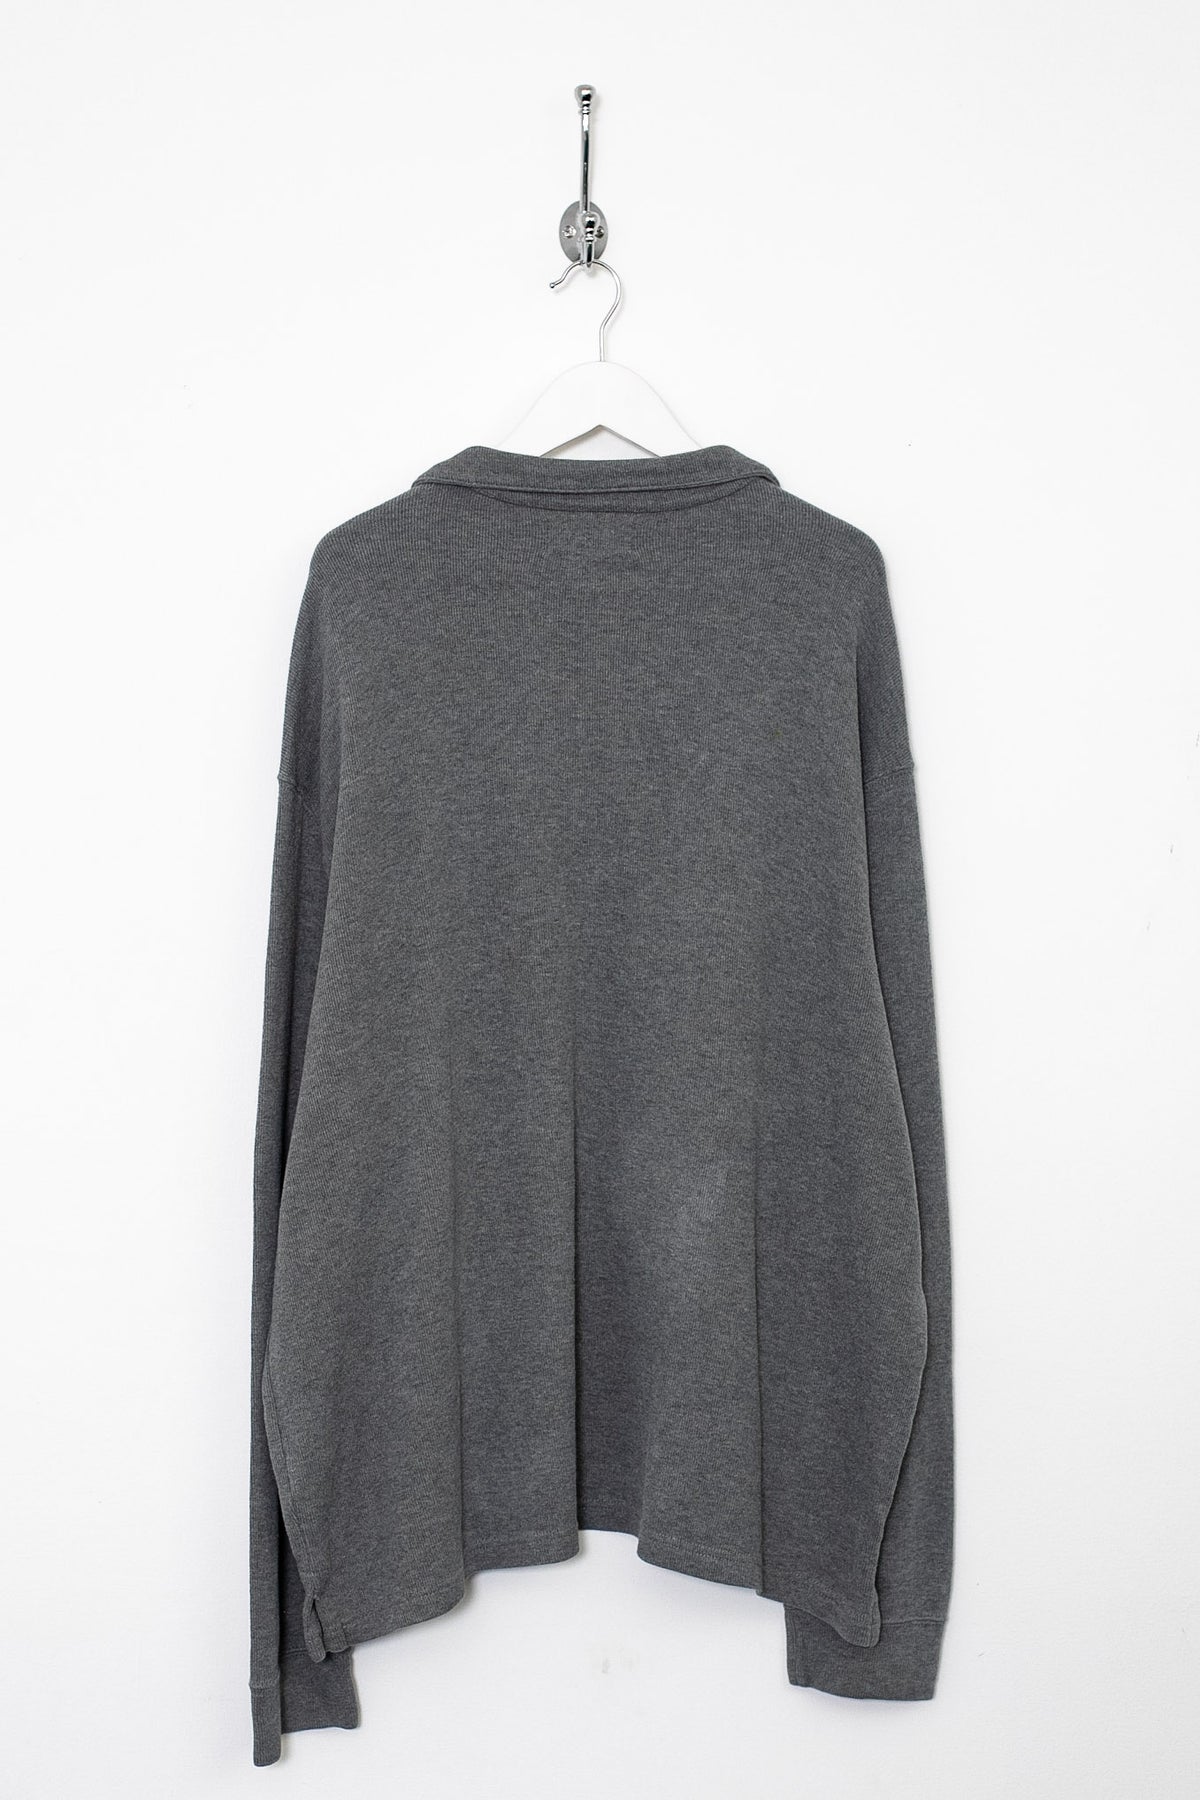 00s Ralph Lauren 1/4 Zip Sweatshirt (XL)